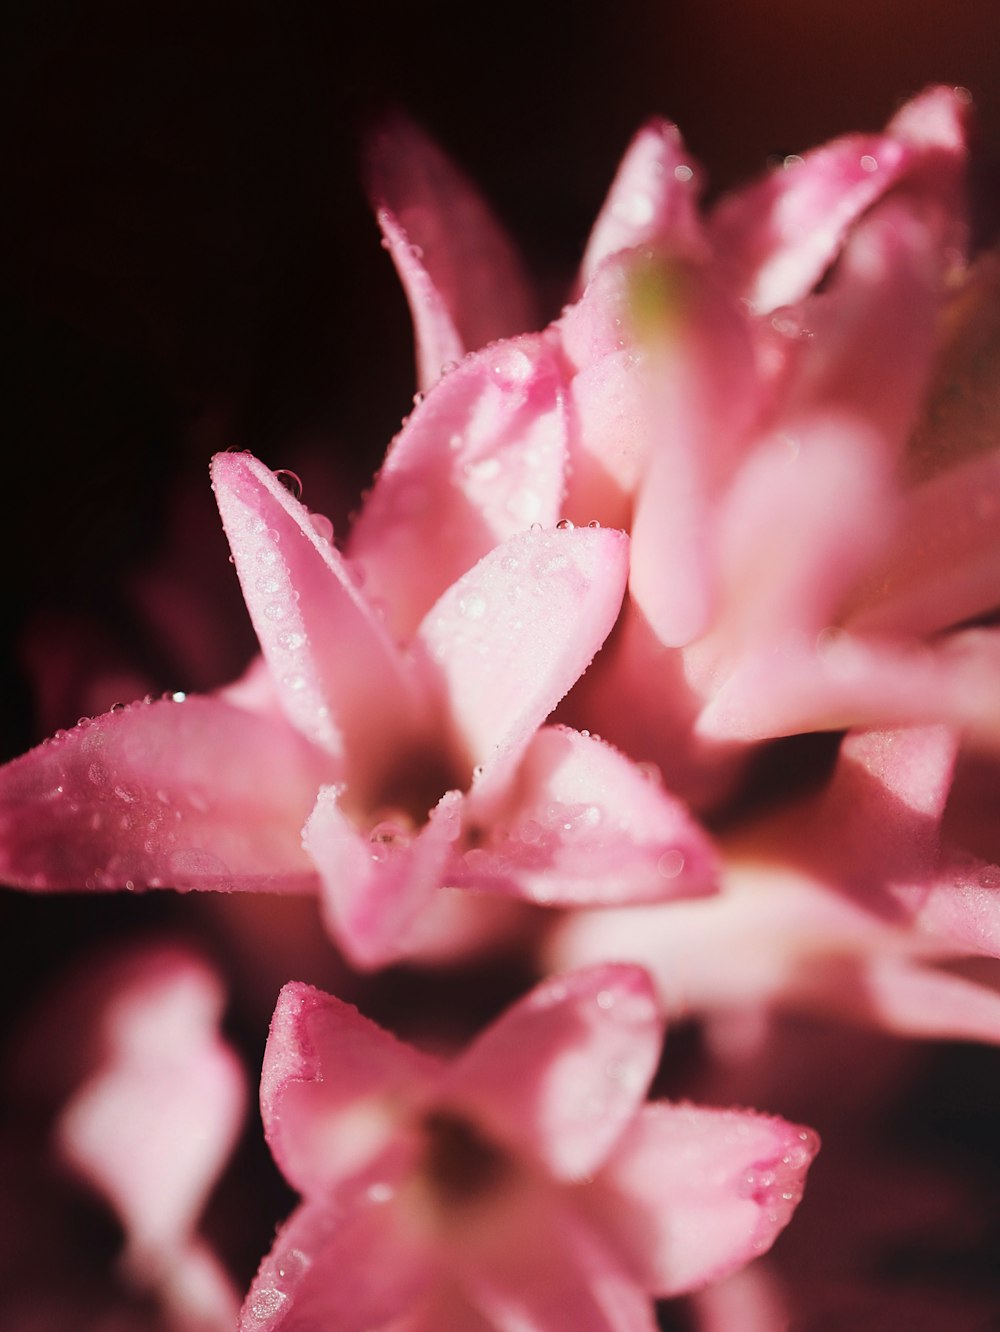 Un primer plano de una flor rosada con gotas de agua